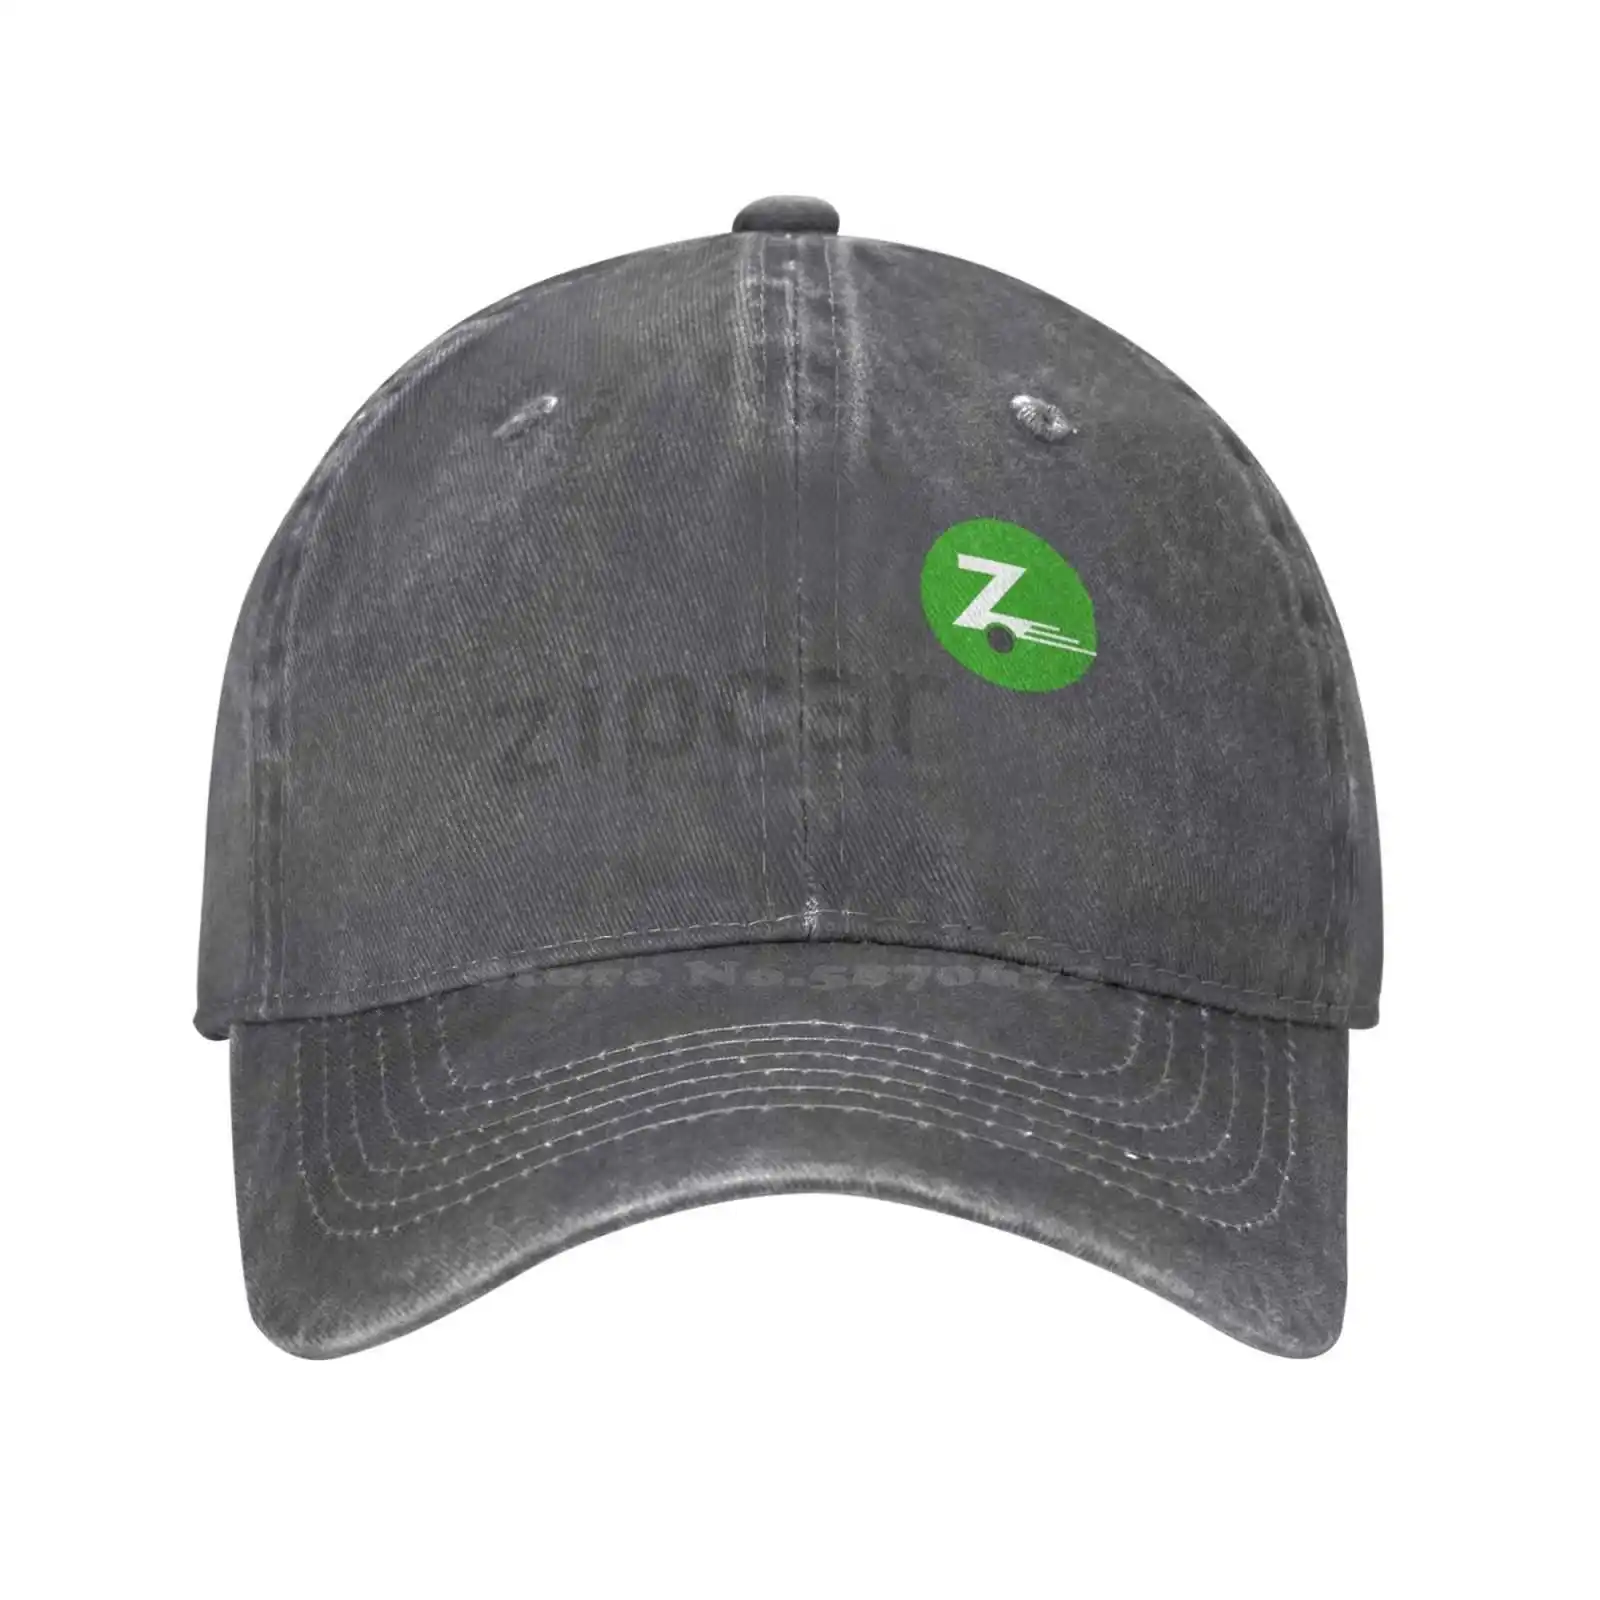 Повседневная джинсовая кепка с графическим принтом логотипа Zipcar, вязаная шапка, бейсболка 2